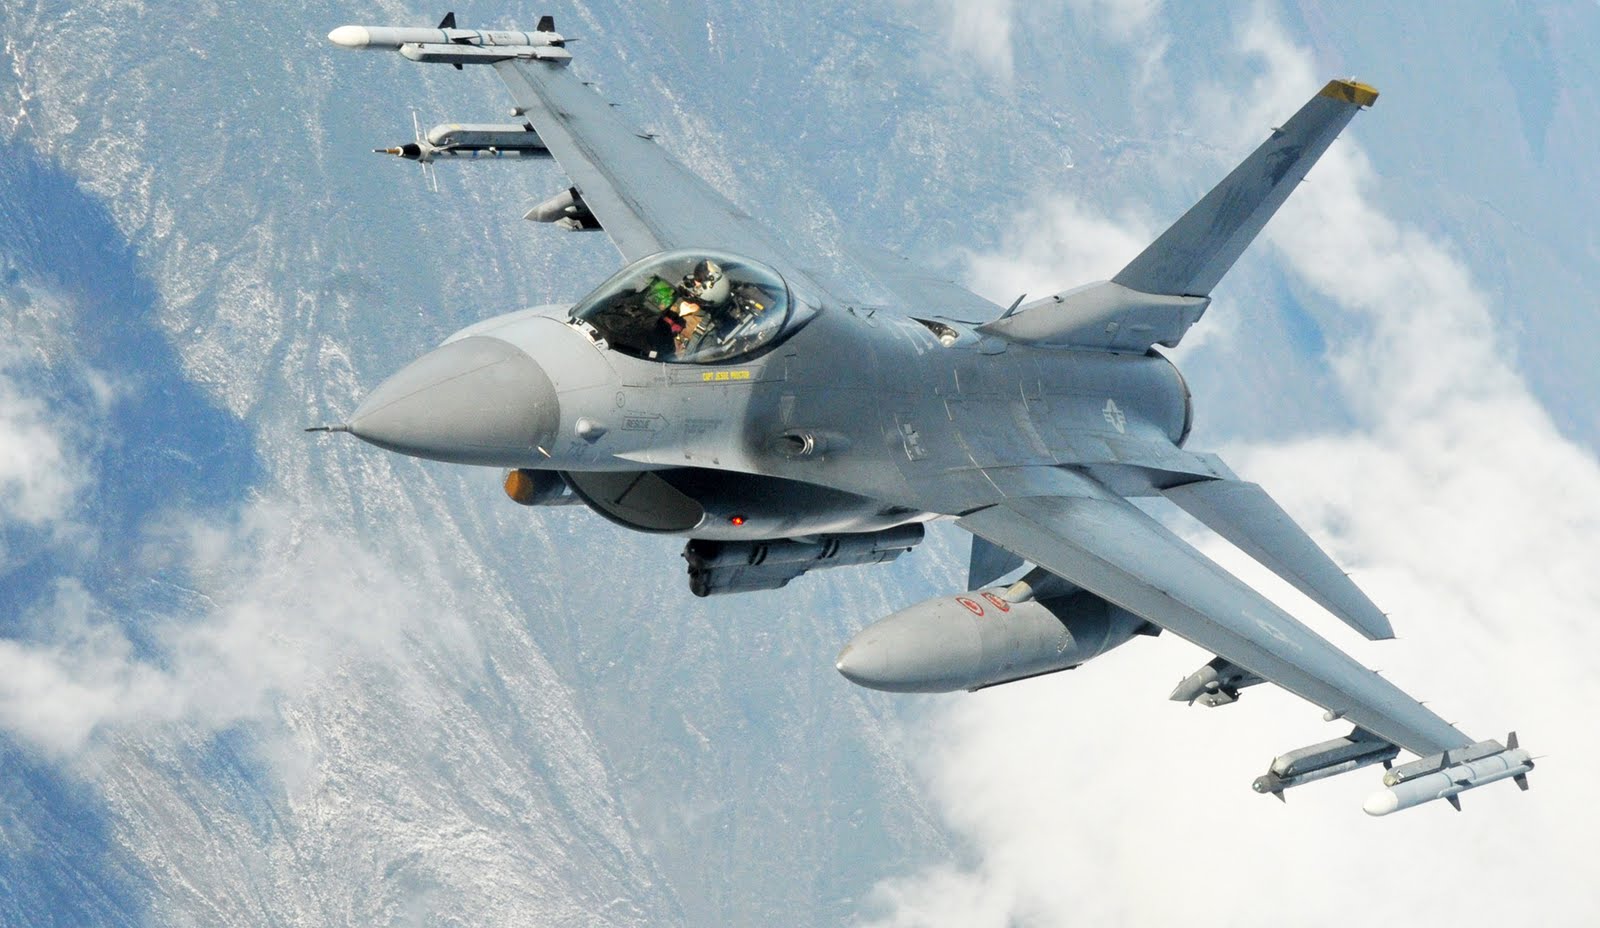 Empat unit pesawat tempur F-16 "Fighting Falcon" yang merupakan hibah dari Amerika Serikat mendarat di Pangkalan Udara TNI AU (Lanud) Iswahjudi Magetan.